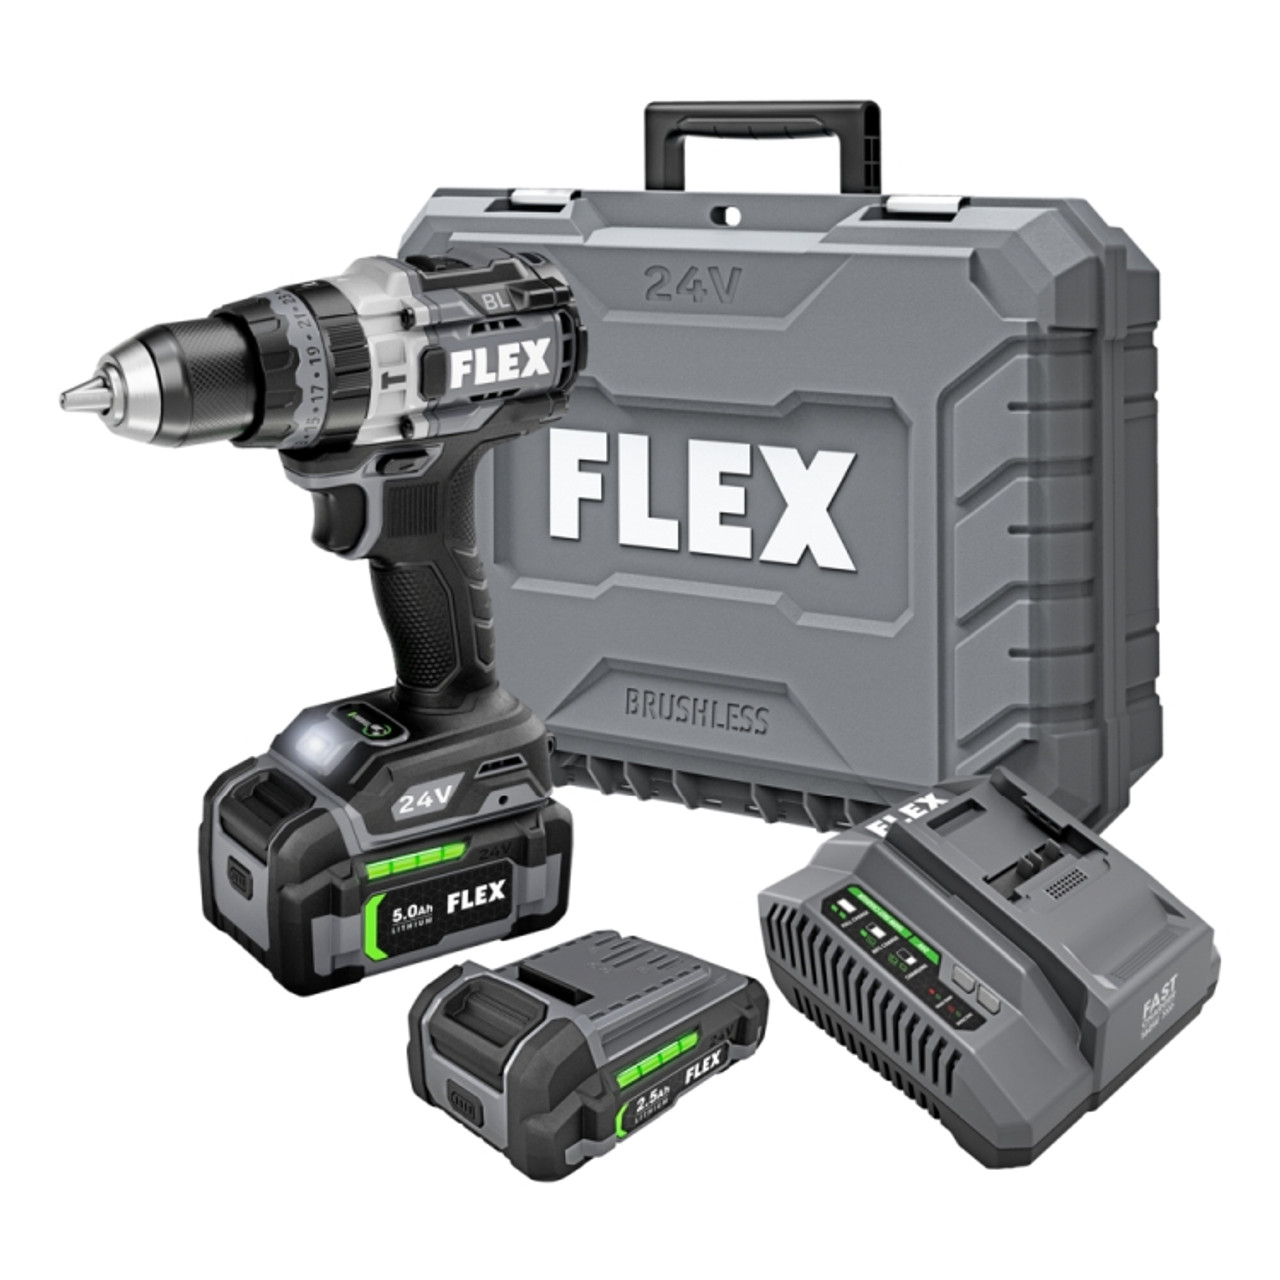 FLEX 24V 1/2" 2-Speed Hammer Drill w/ Turbo Mode Kit Pre-Order